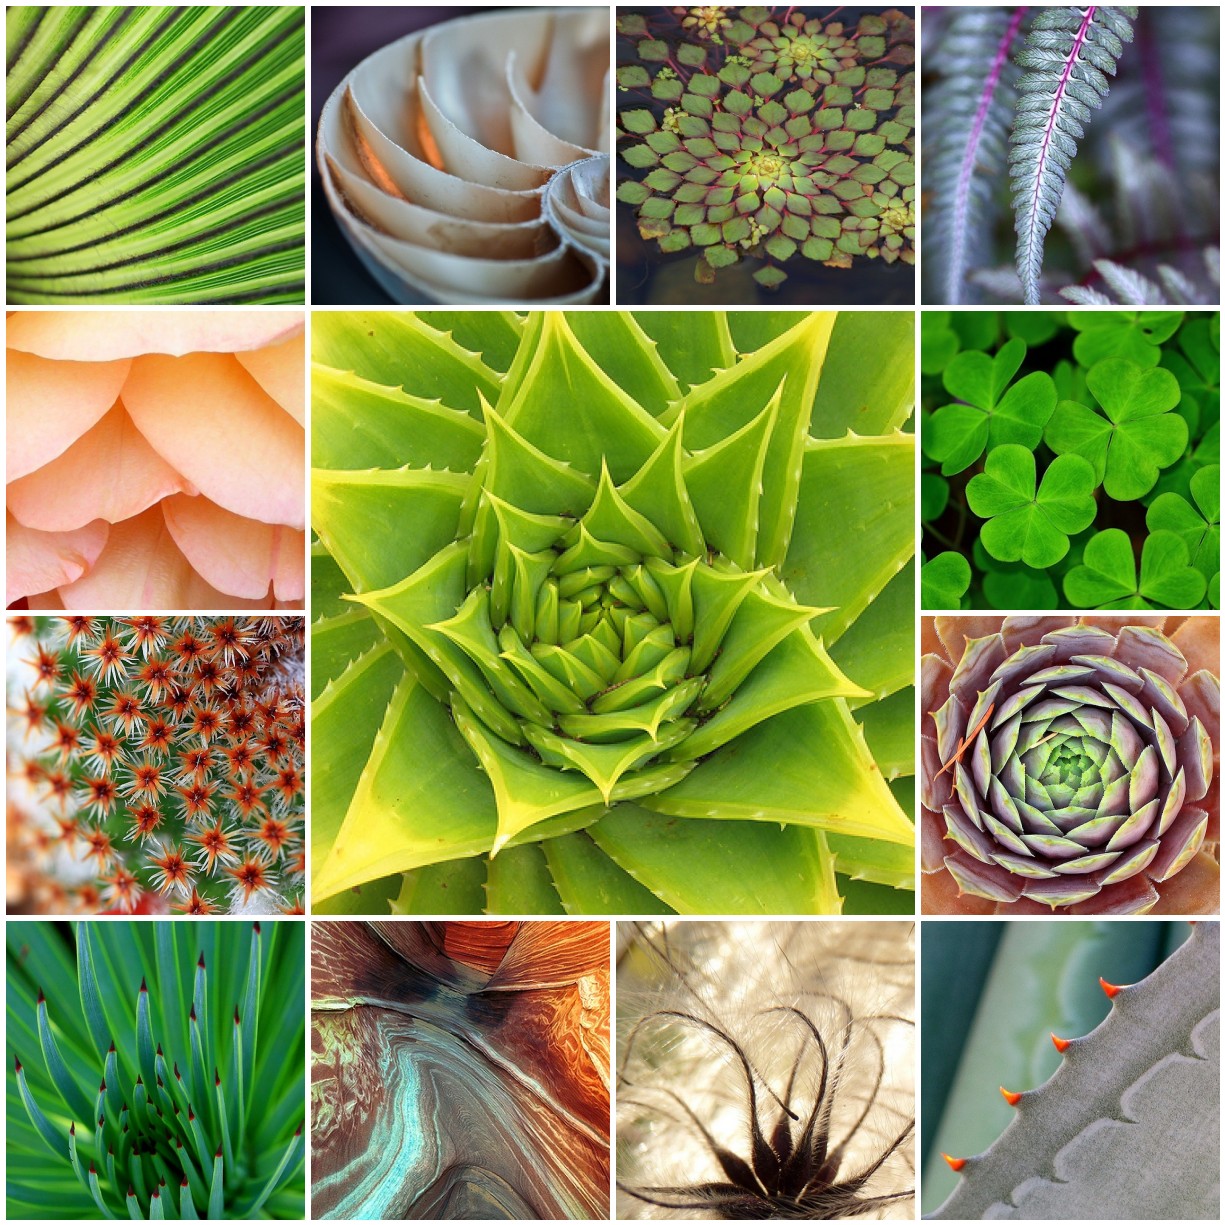 Types of natural. Паттерны в природе. Паттерна природа. Nature pattern. Patterns in nature.